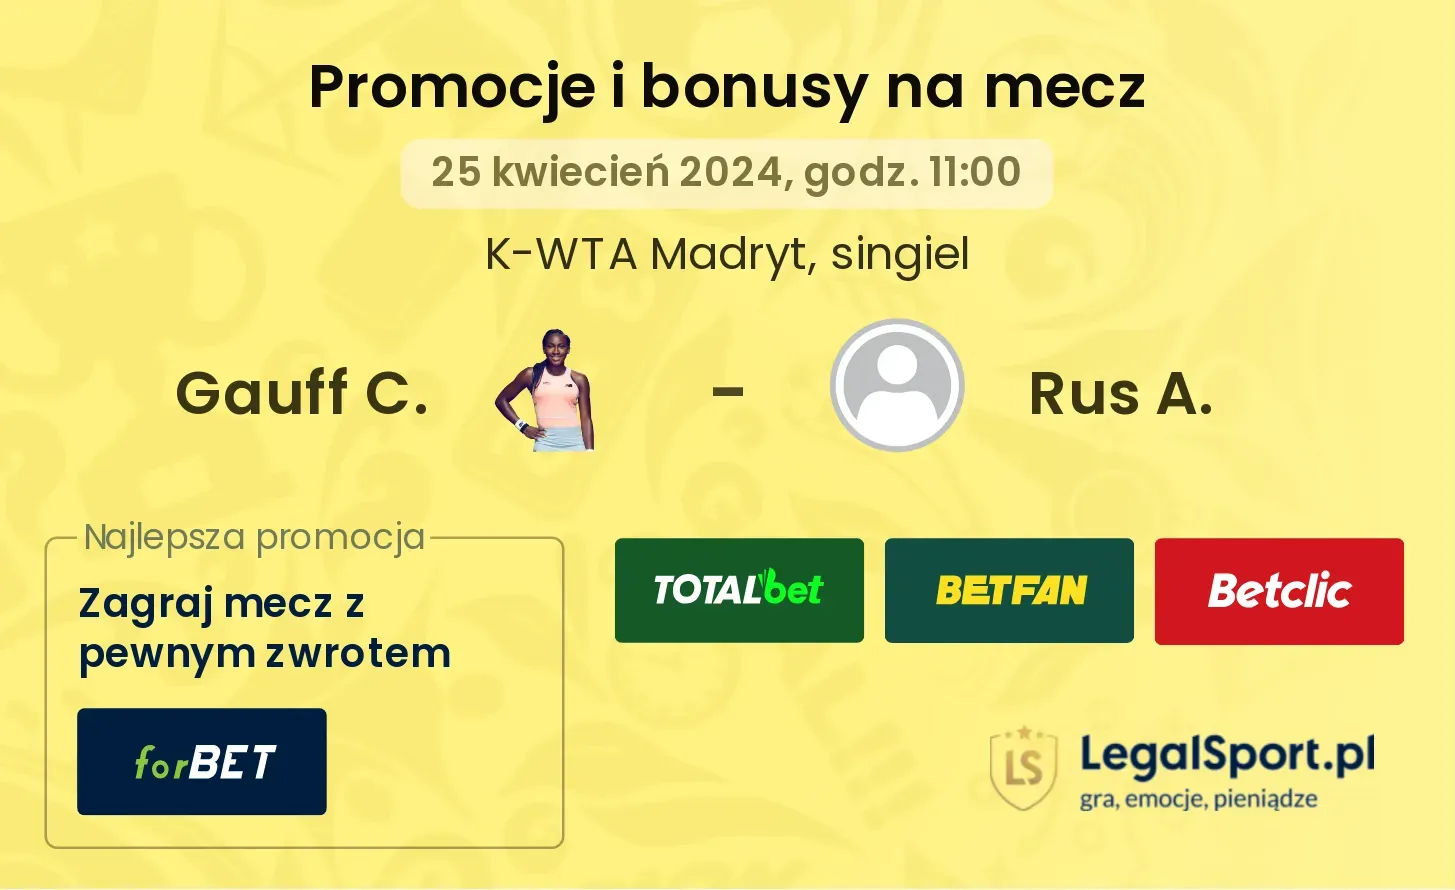 Gauff C. - Rus A. promocje bonusy na mecz